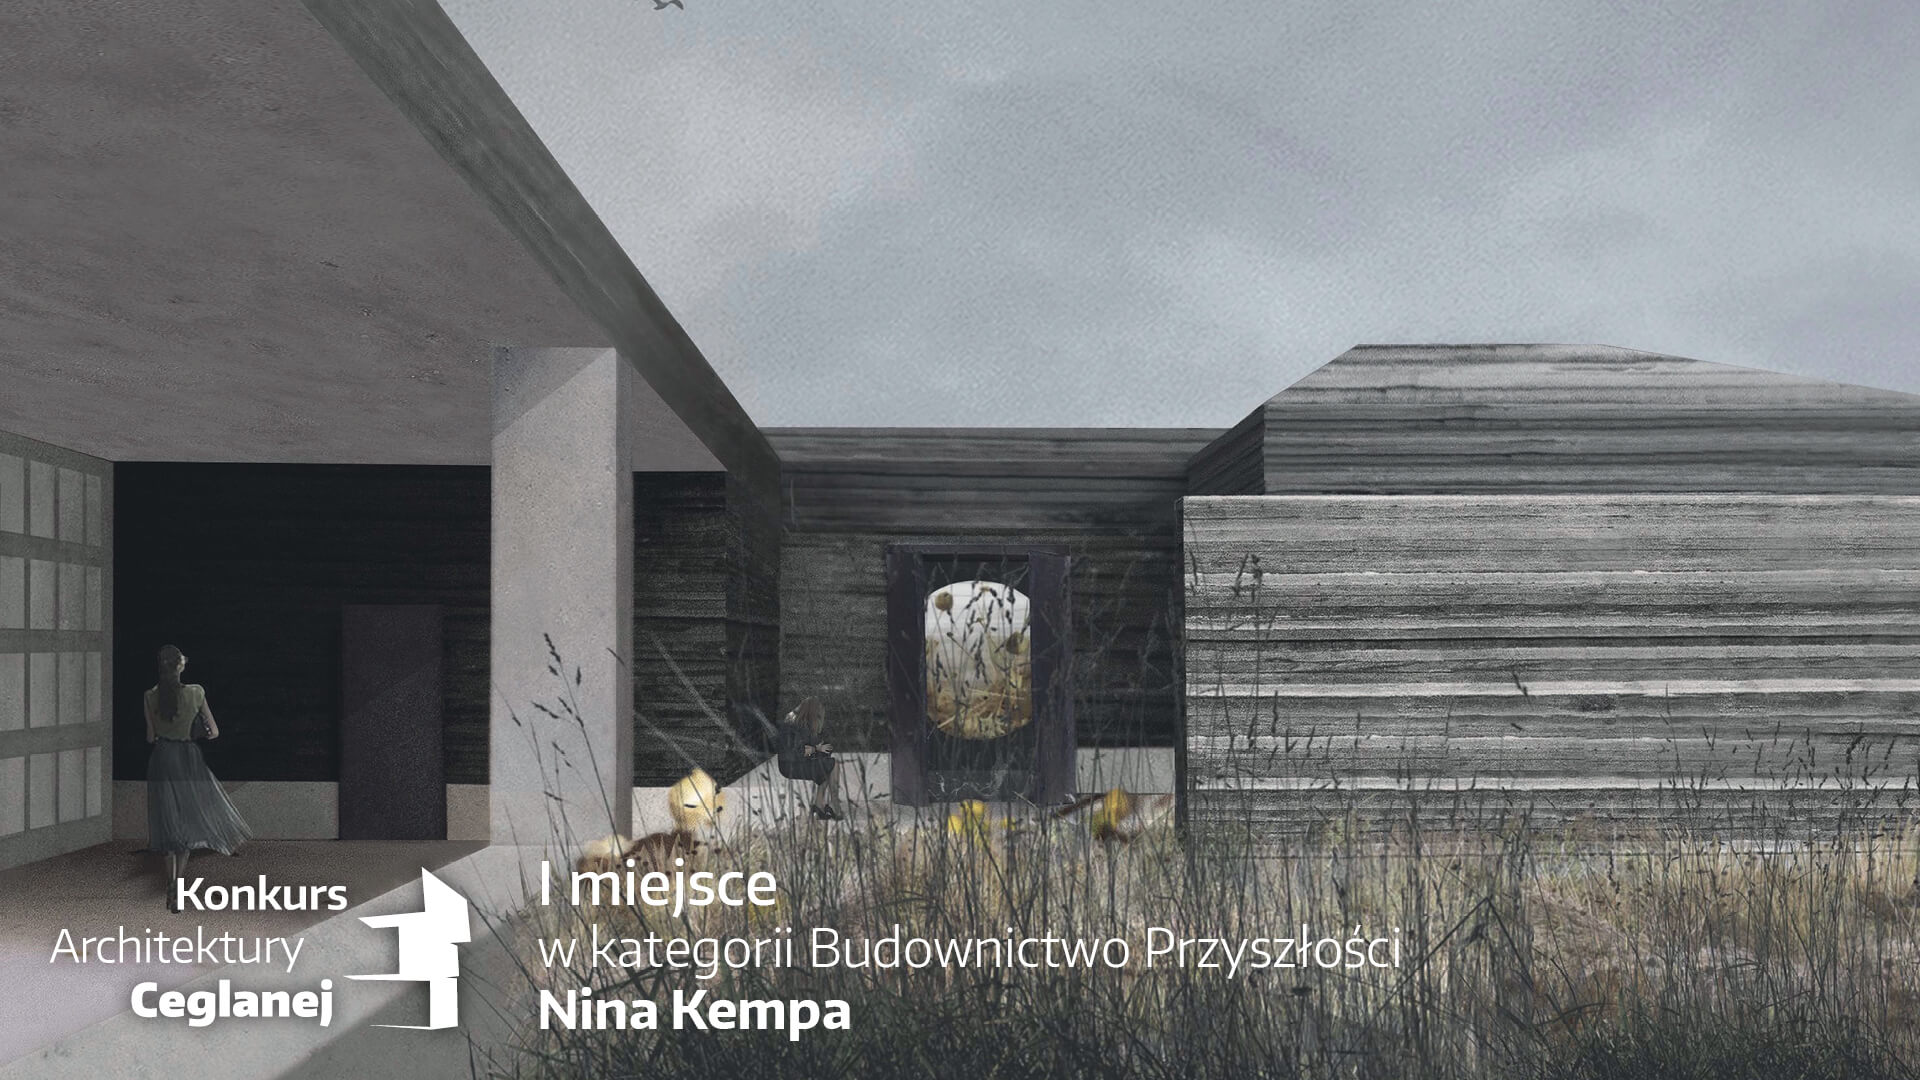 I miejsce w kategorii Budownictwo Przyszłości - Nina Kempa